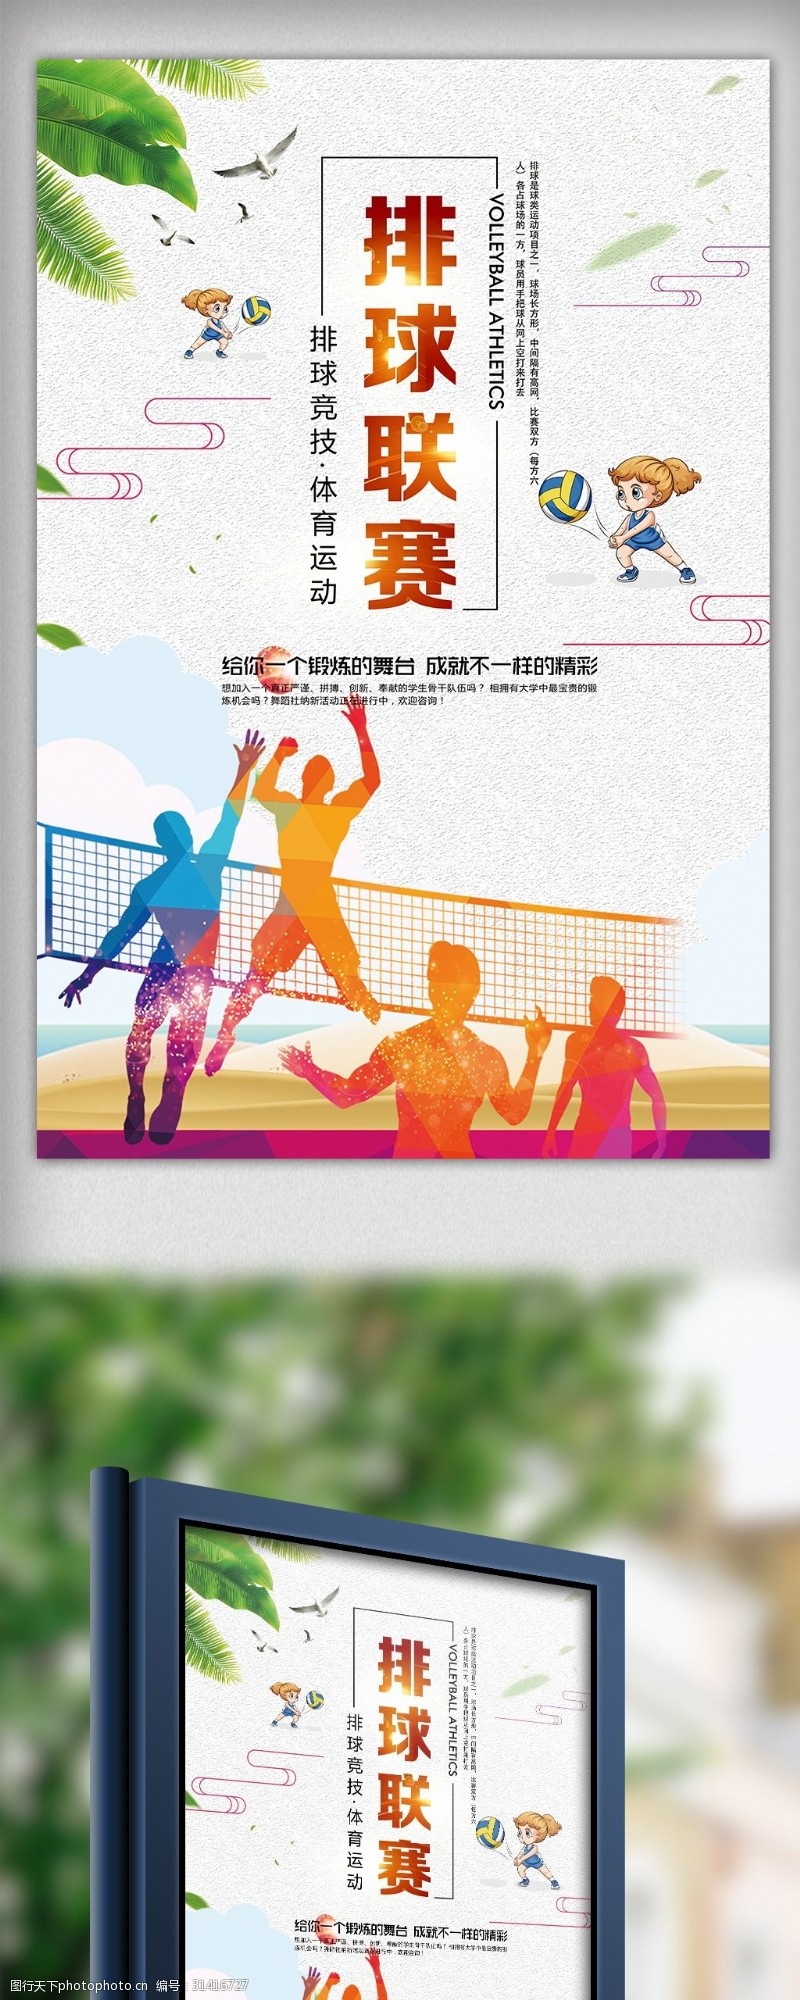 啦啦队简约健美操健身操大赛创意宣传海报